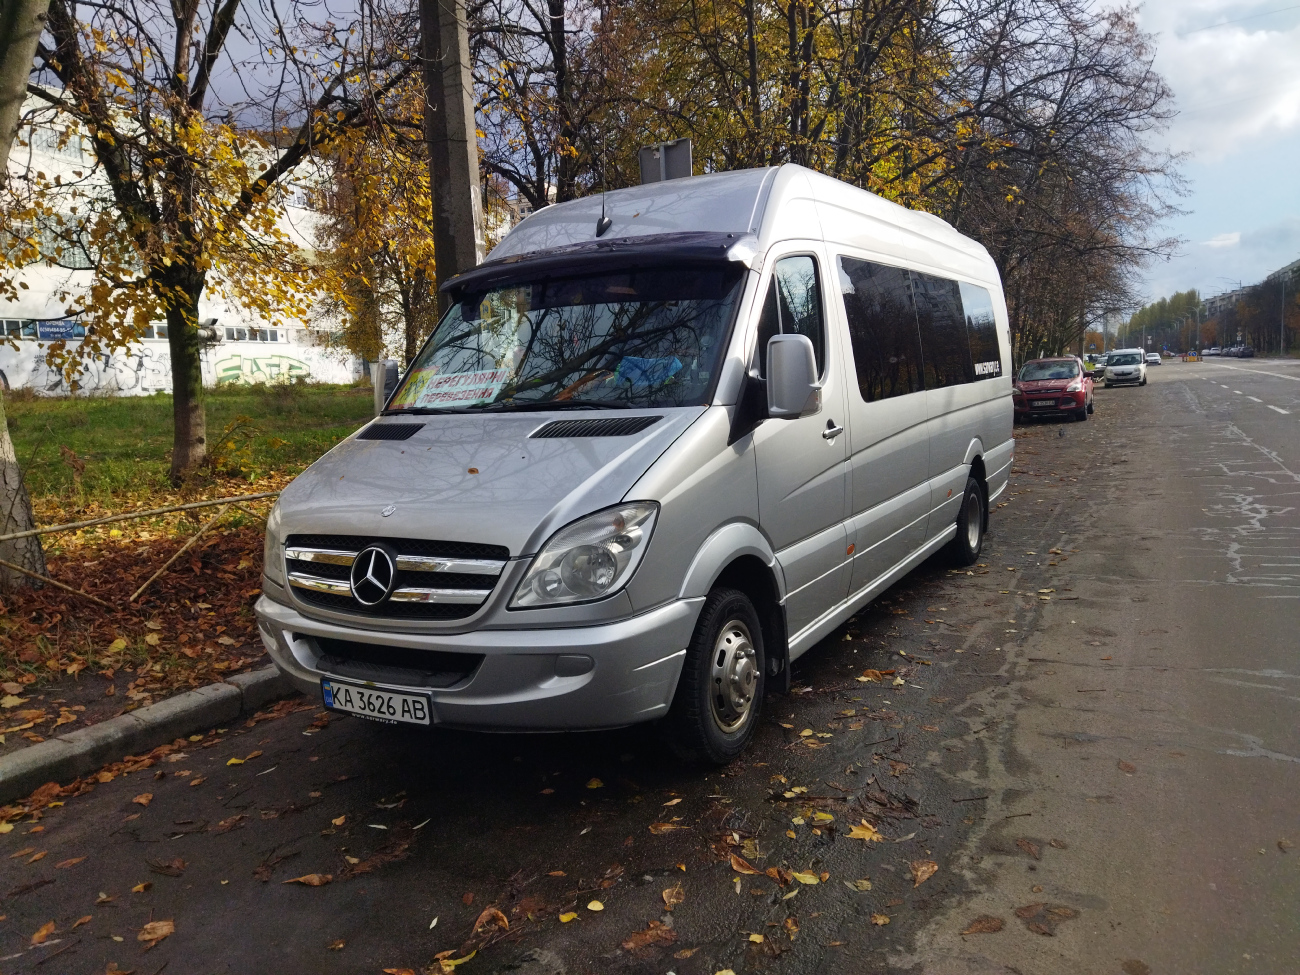 Киев, Mercedes-Benz Sprinter 906BB55 № КА 3626 АВ